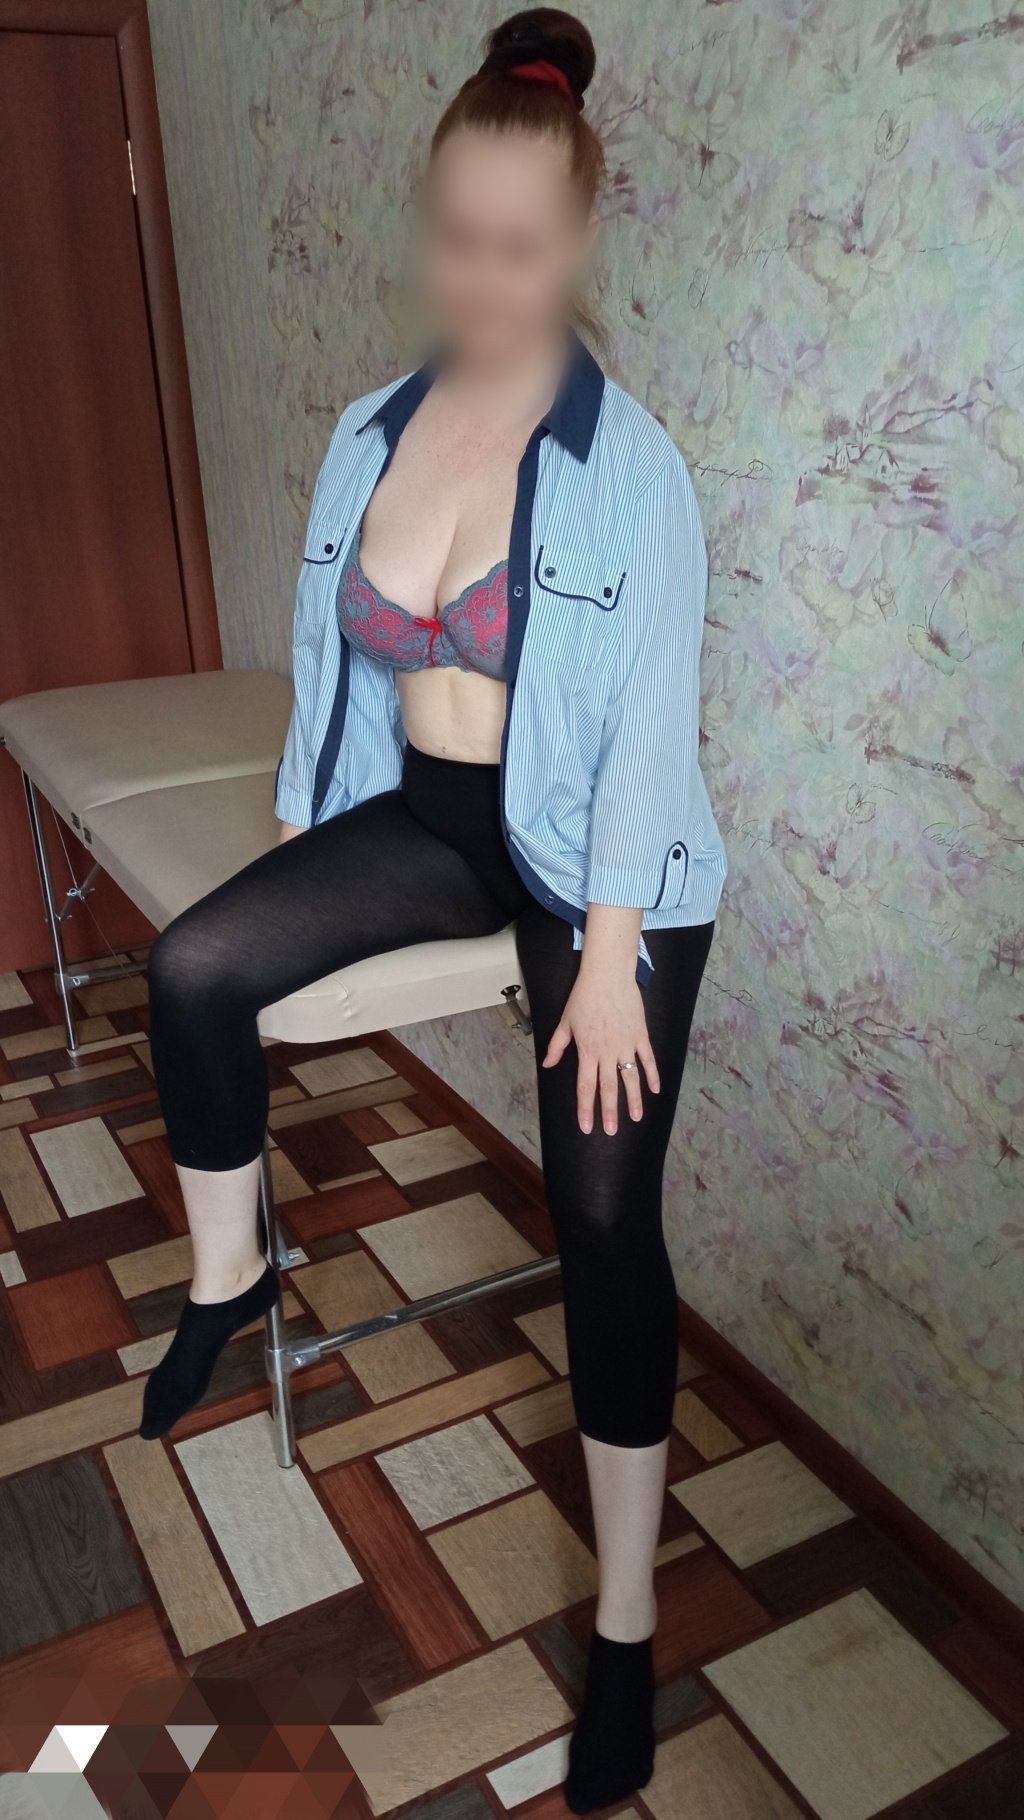 Кира Массаж: проститутки индивидуалки в Челябинске